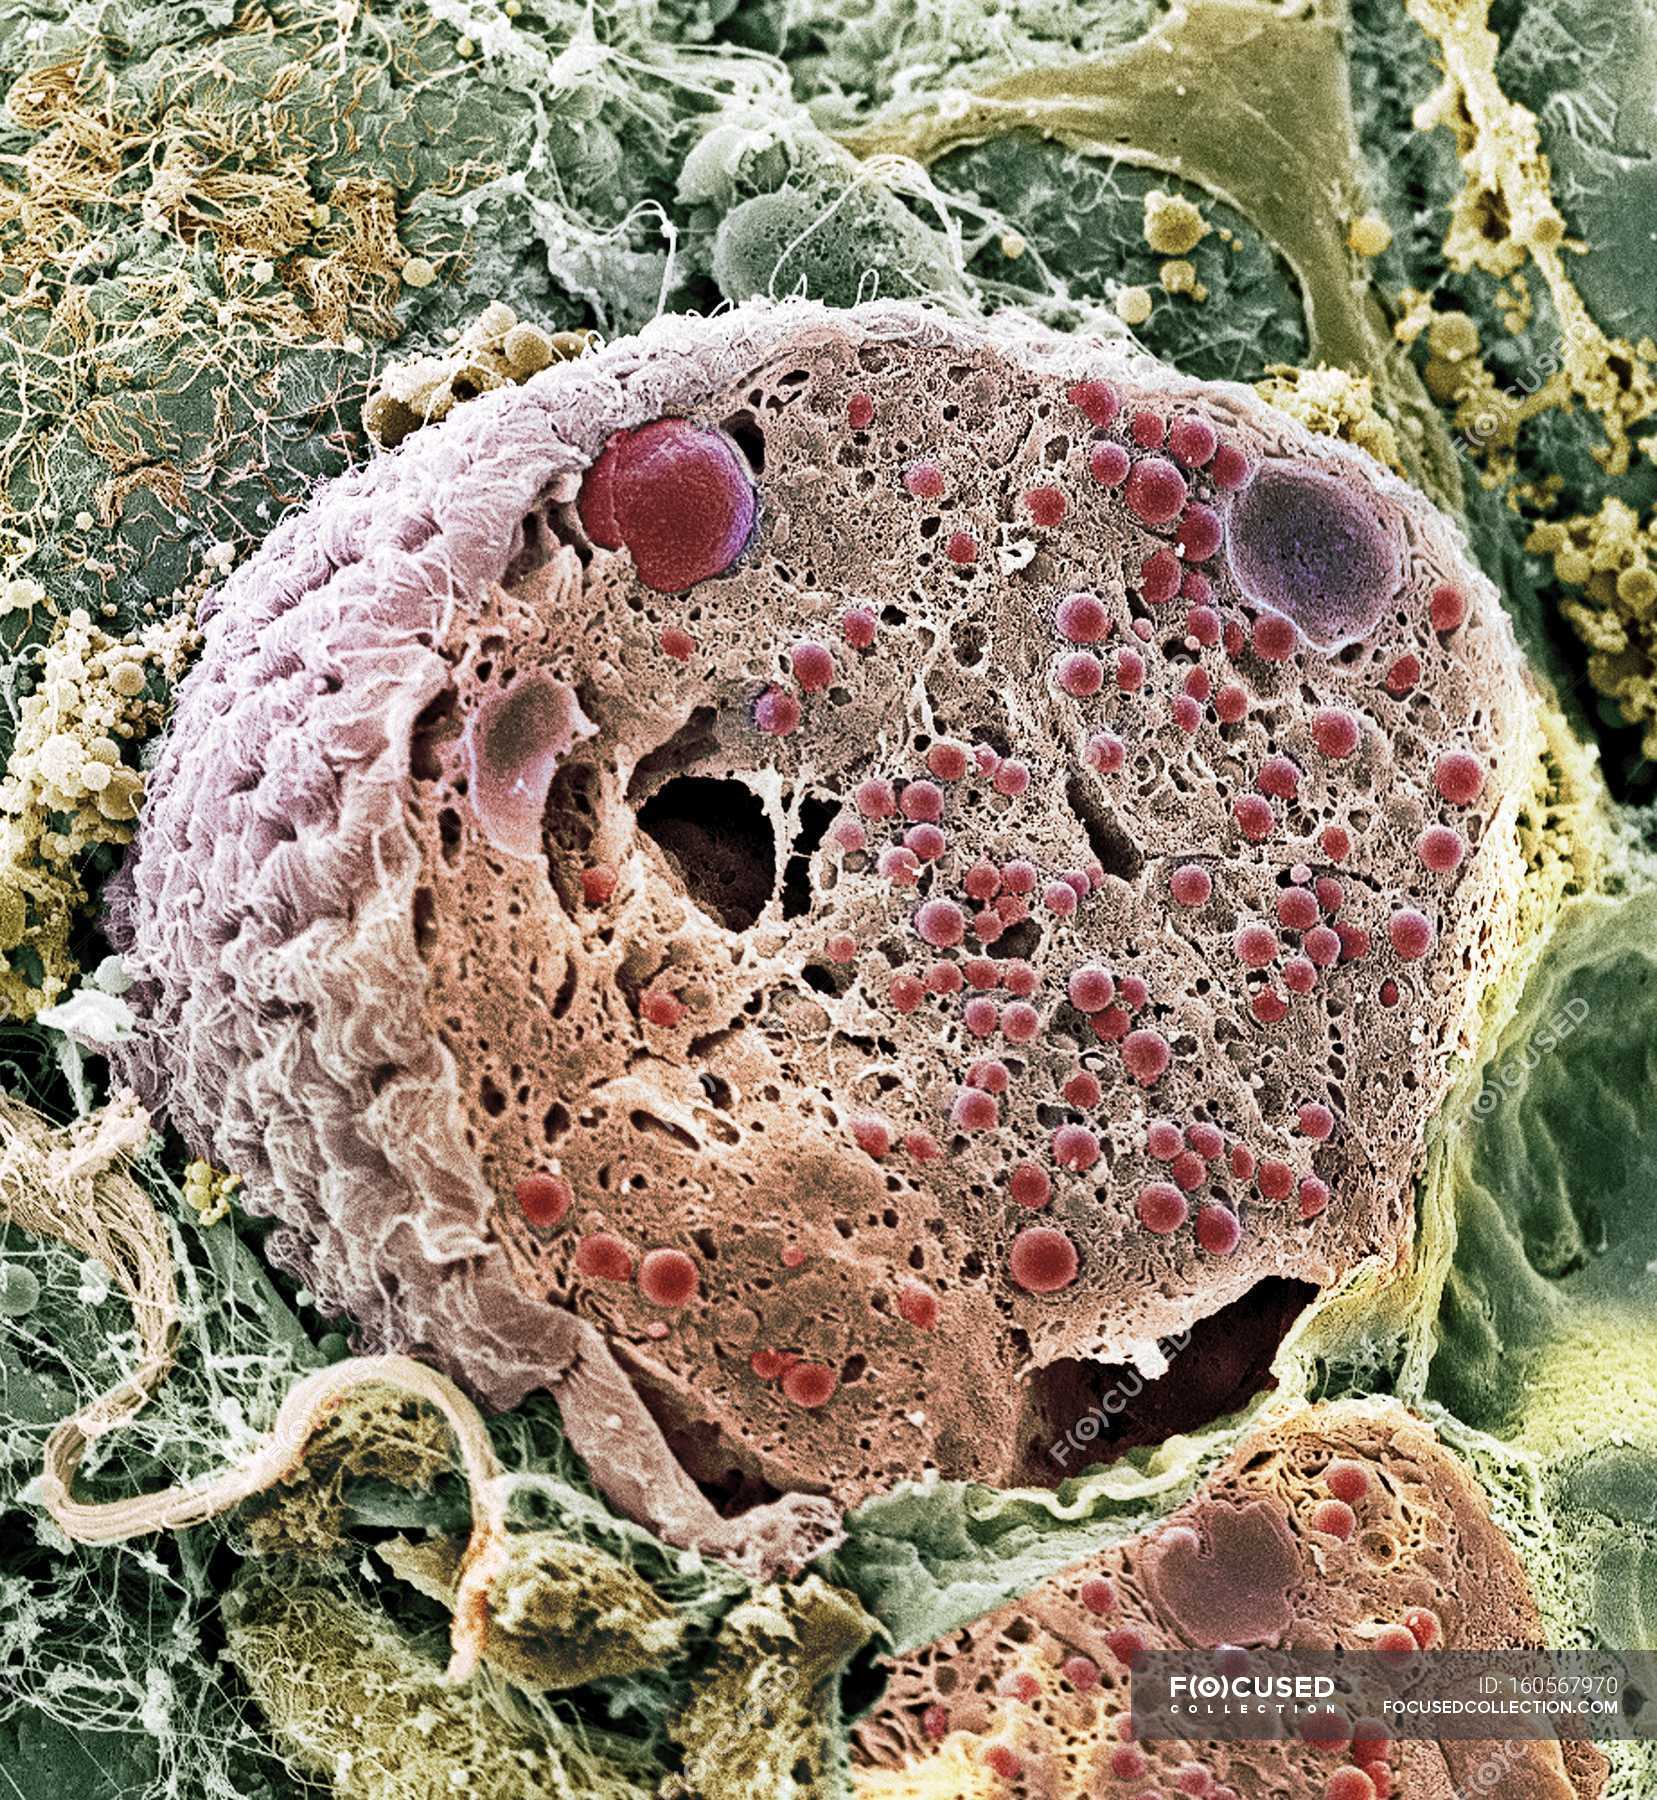 Раковые клетки под микроскопом